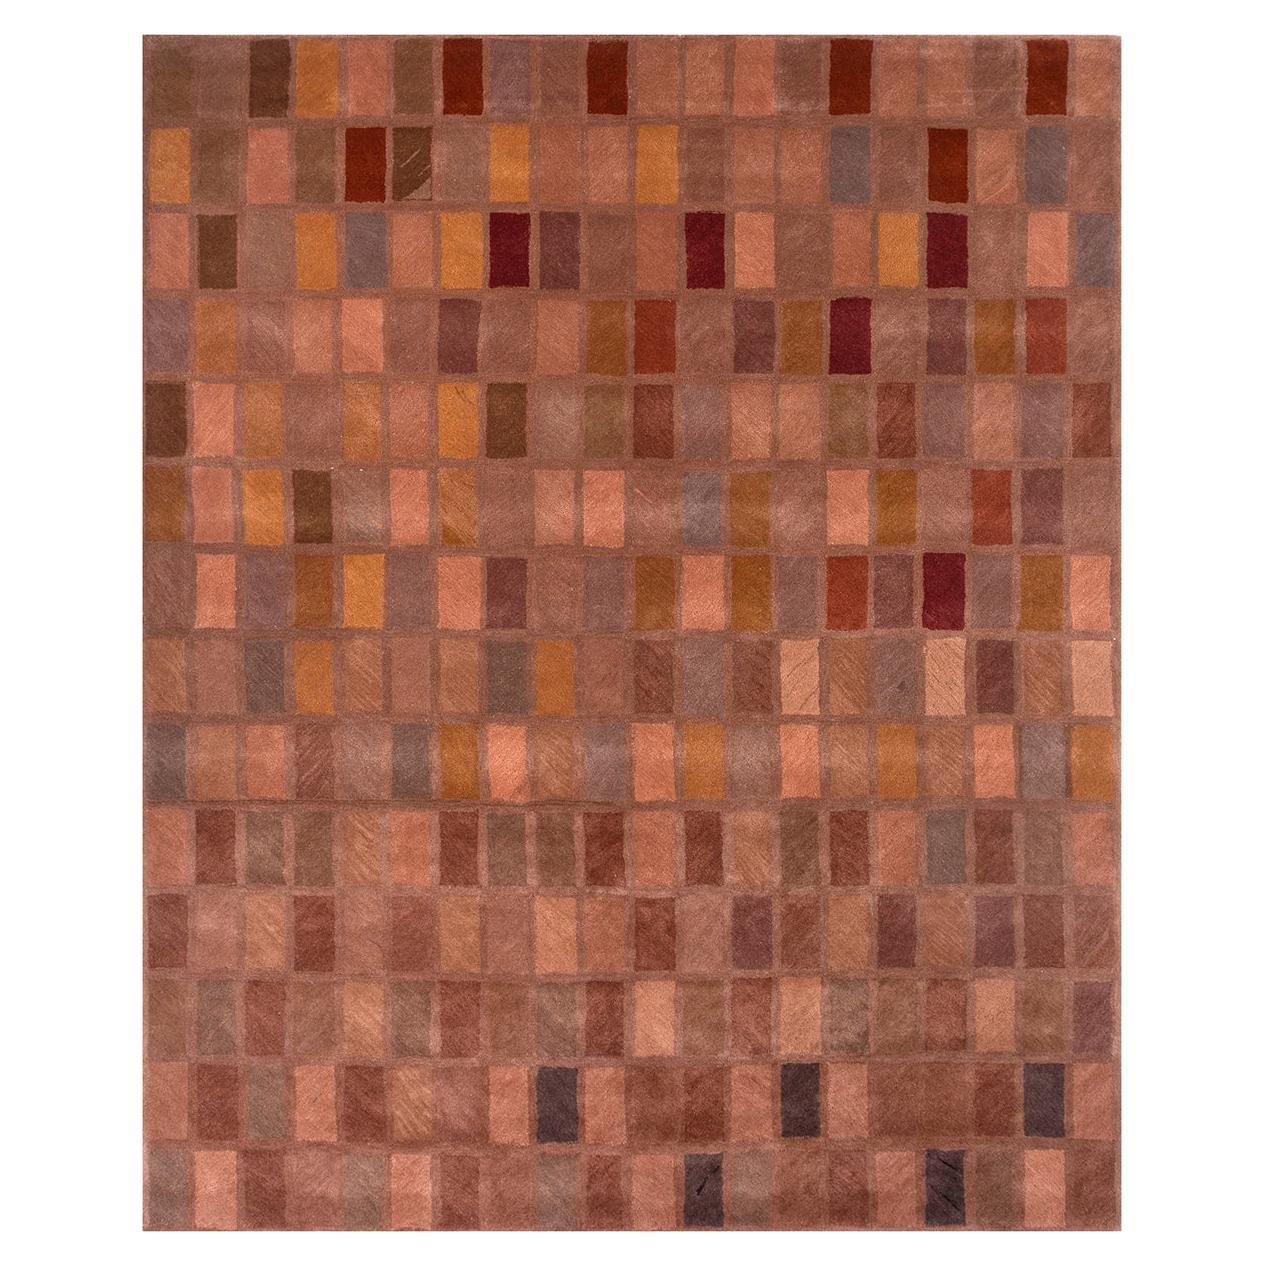 Karamellteppich von Rural Weavers, getuftet, Wolle, Viskose, 240x300cm